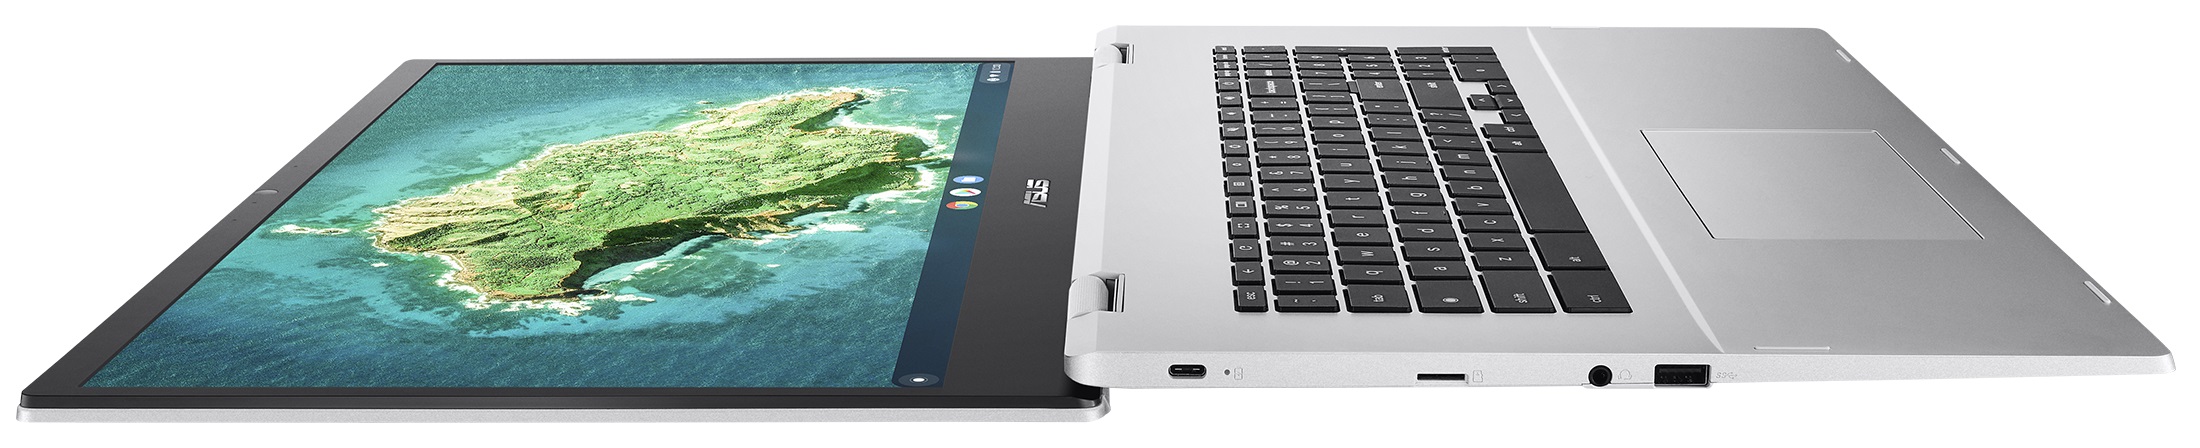 Tests DE Technische Chromebook LaptopMedia Daten, | - CX1 (CX1700) und Preise ASUS